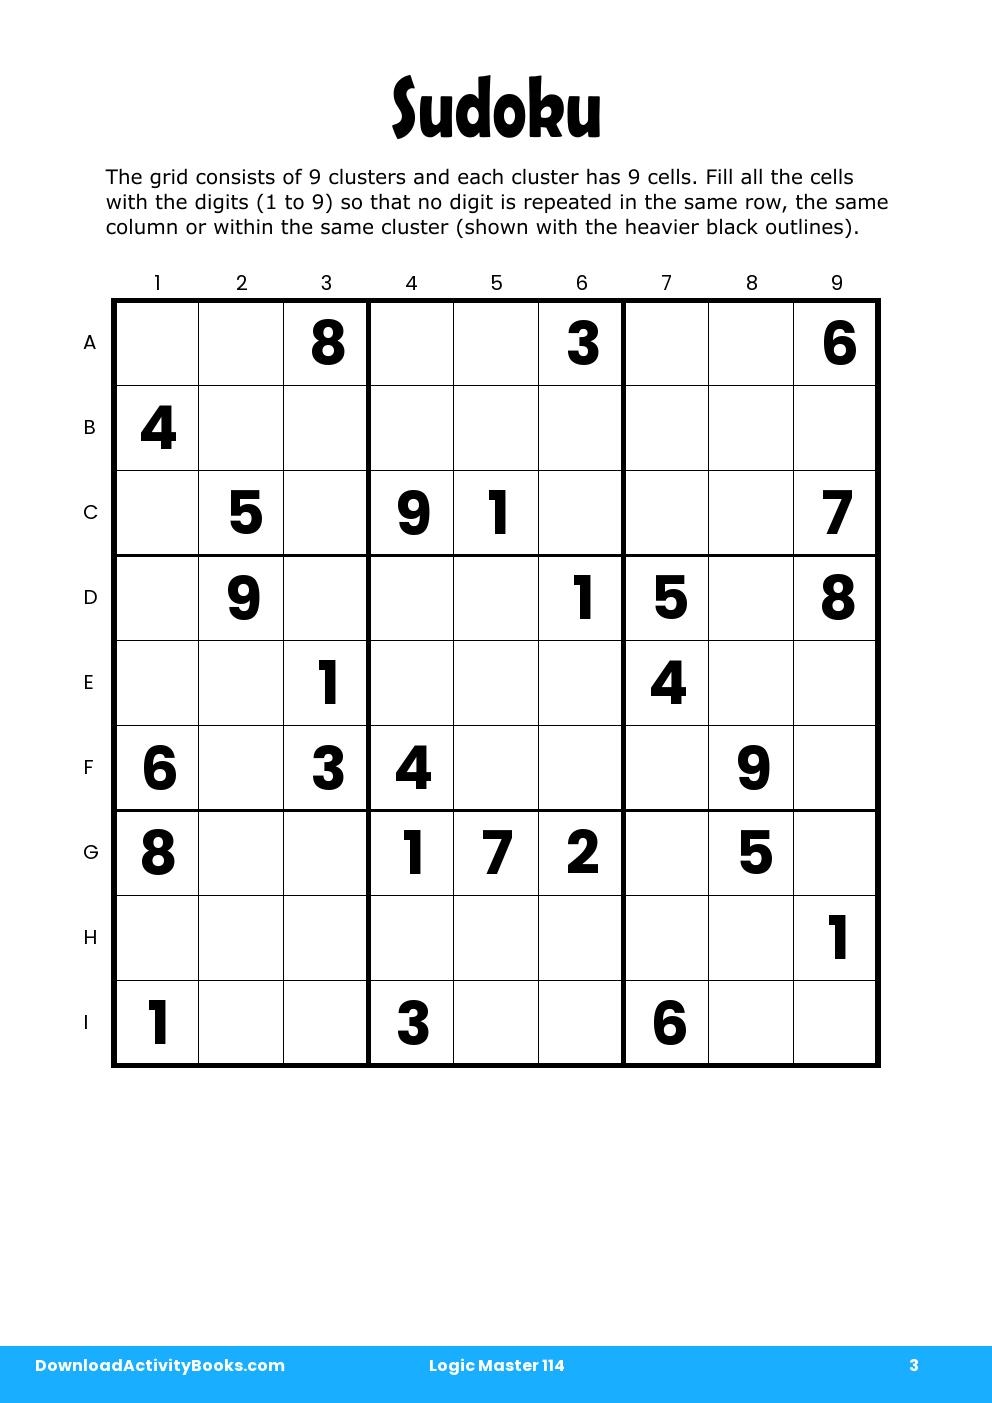 Sudoku in Logic Master 114